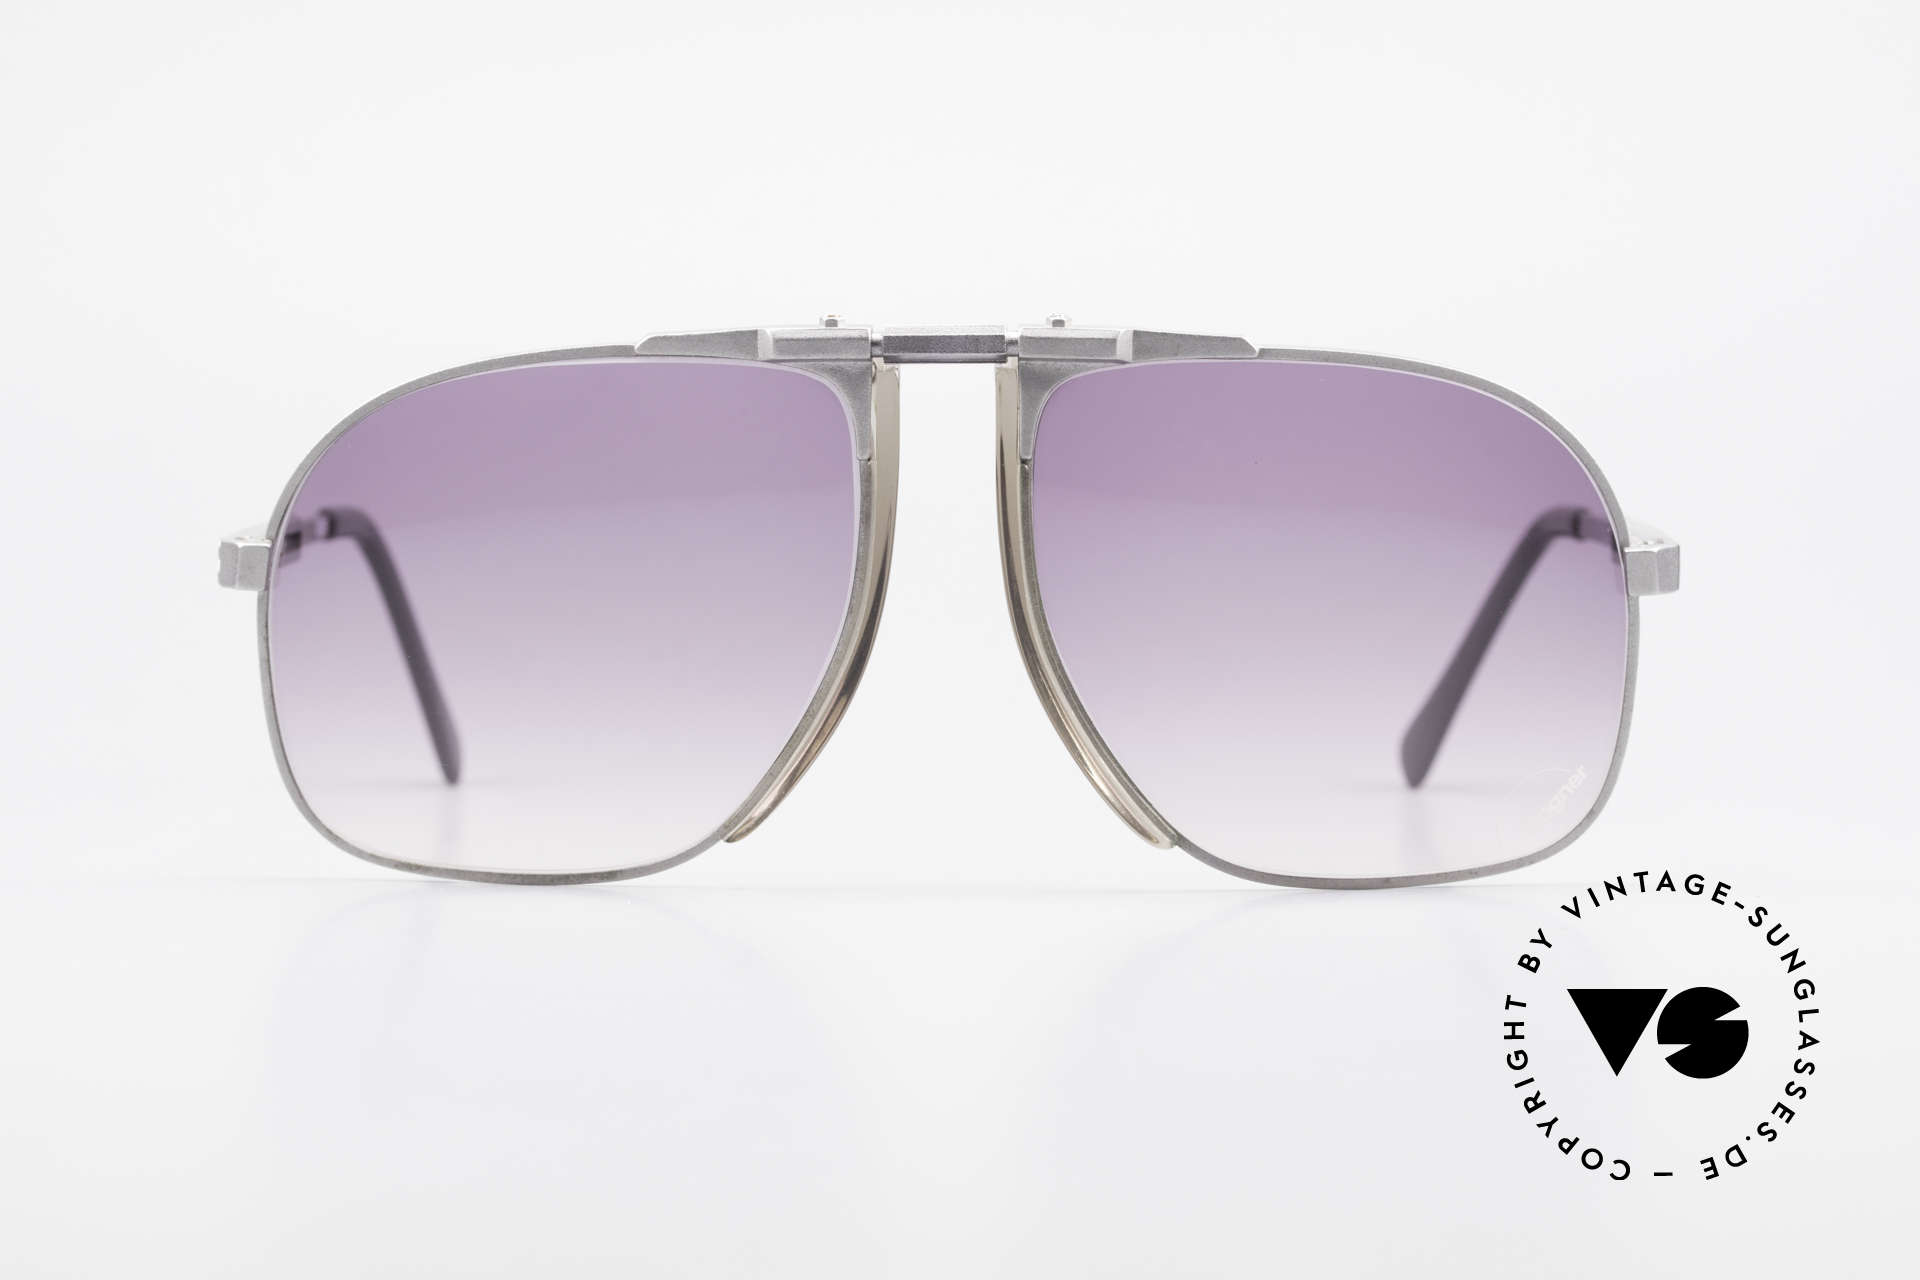 Willy Bogner 7023 Einstellbare Sonnenbrille 80er, stufenlos verstellbare Eschenbach-Bügel (1A Komfort), Passend für Herren